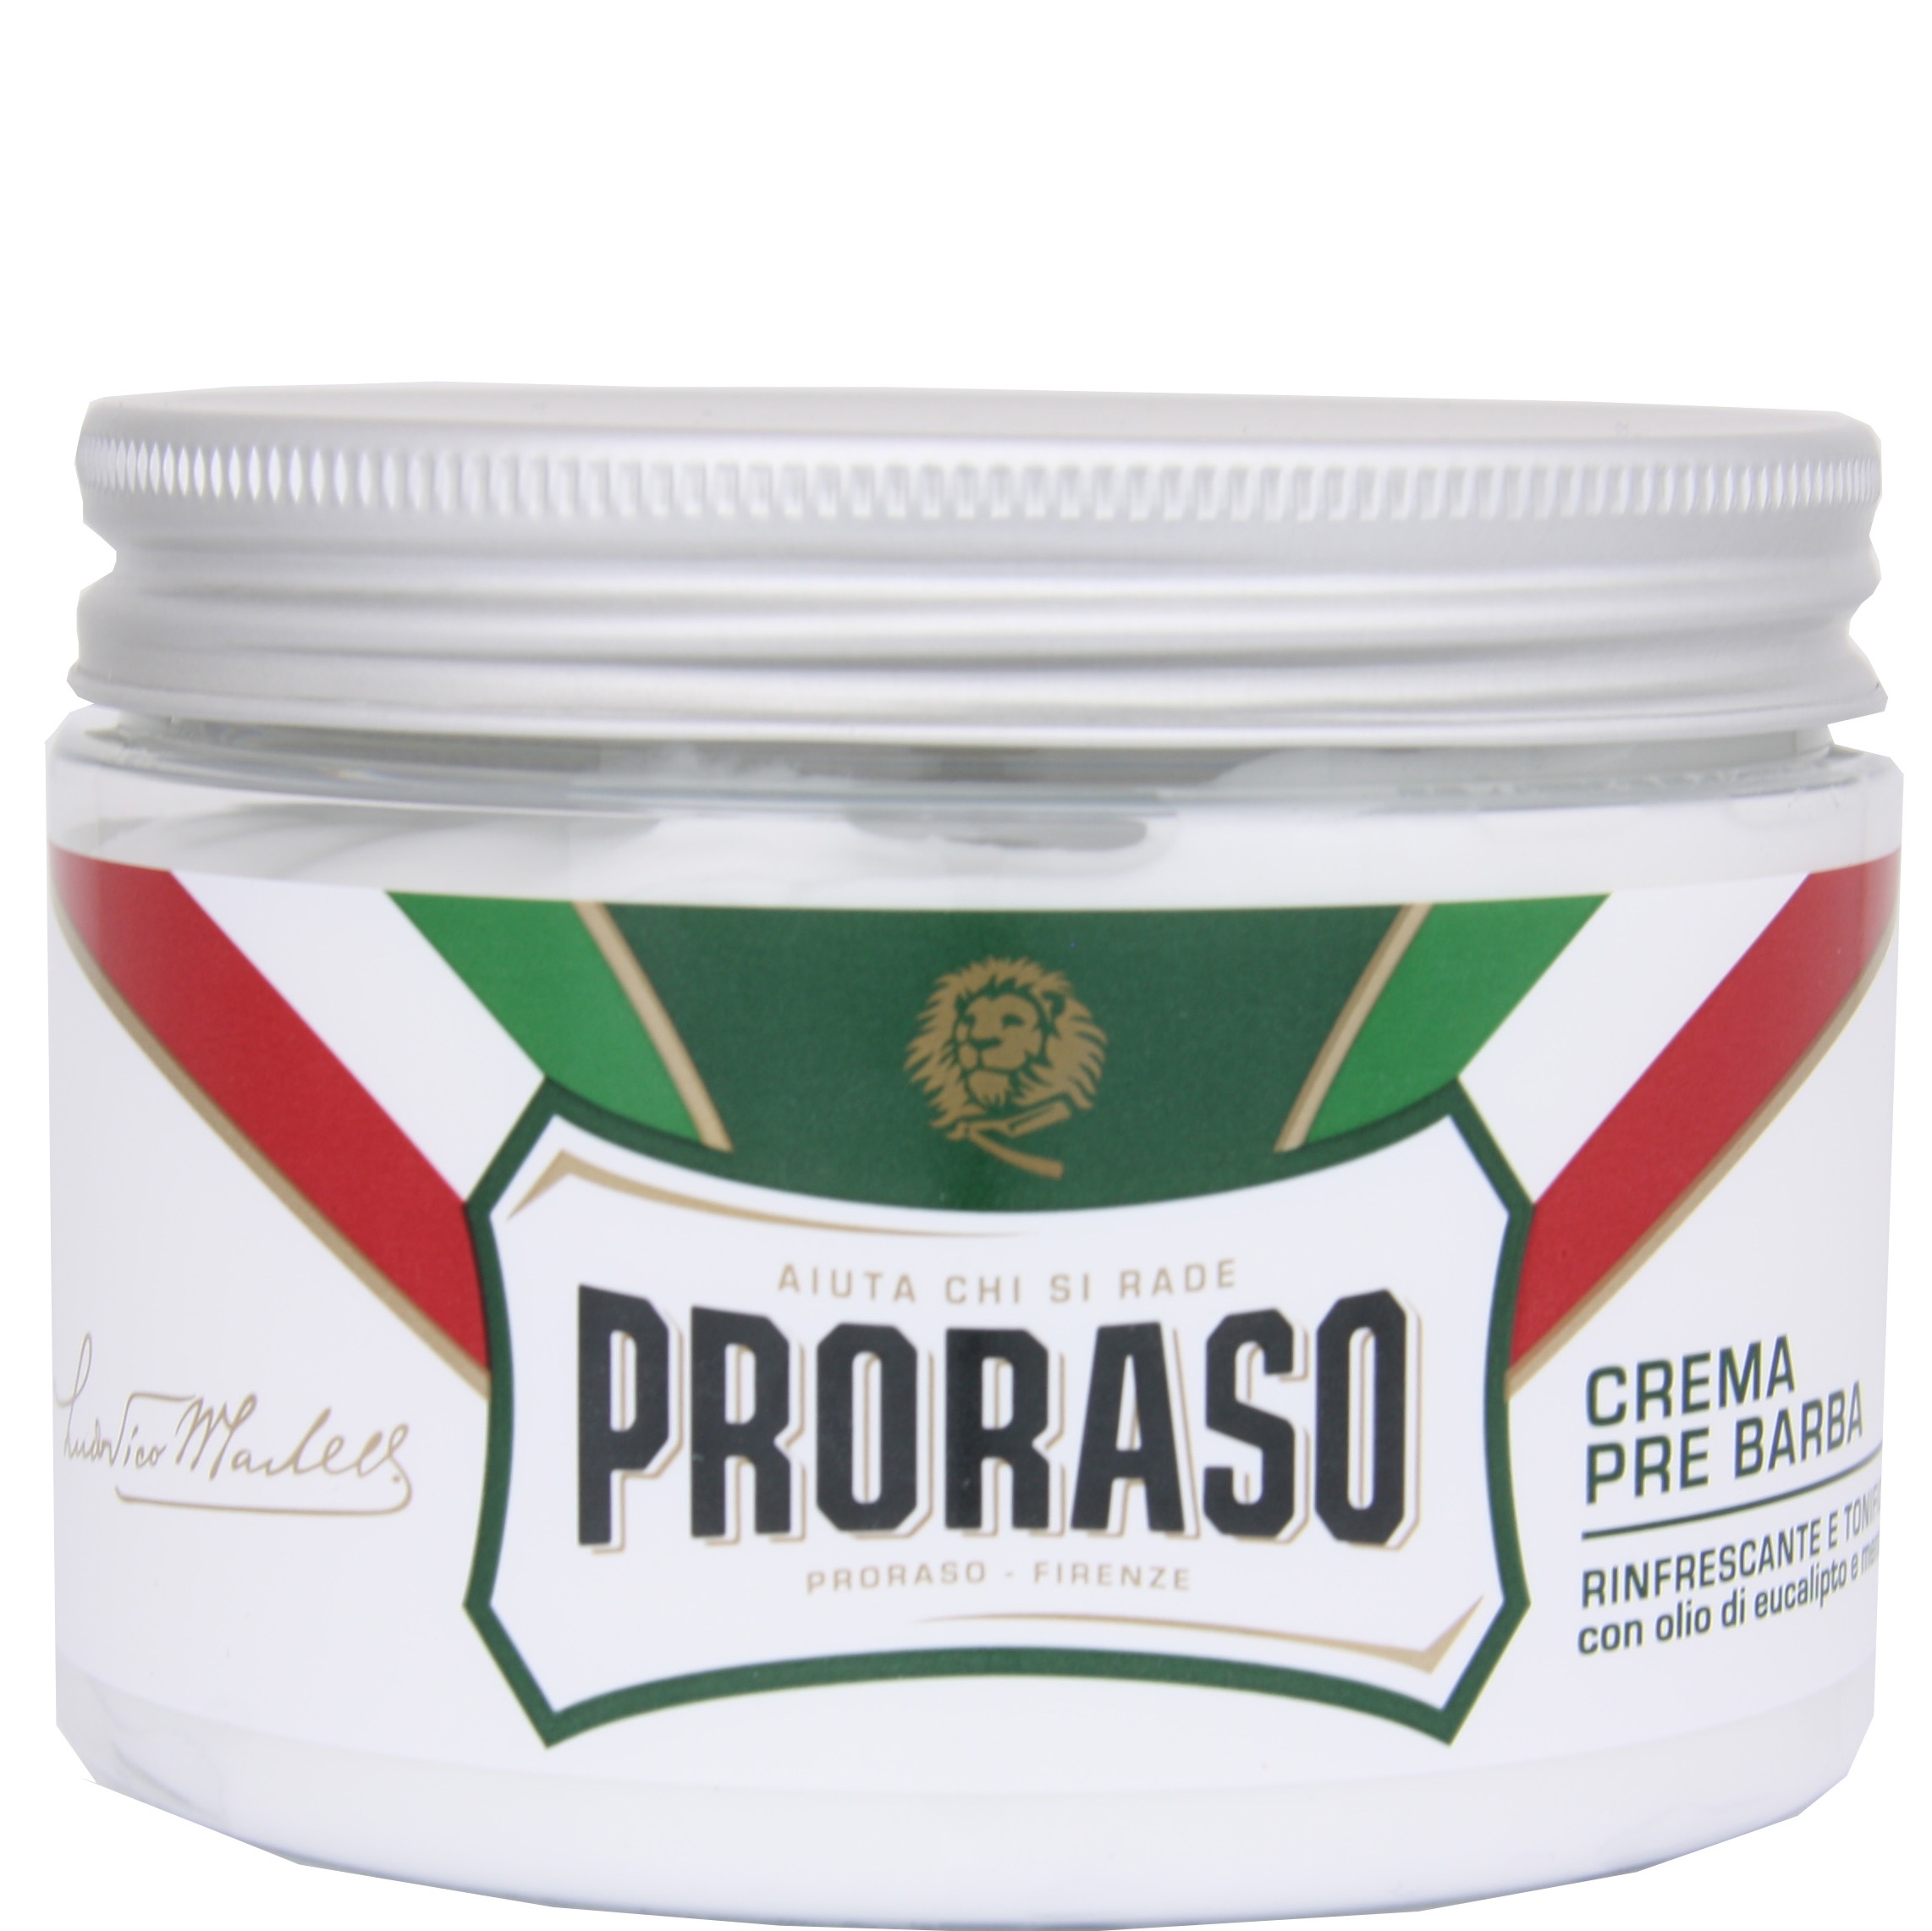 Proraso Pre-shave Crème original 300ml - 1.2 - PRO-400600